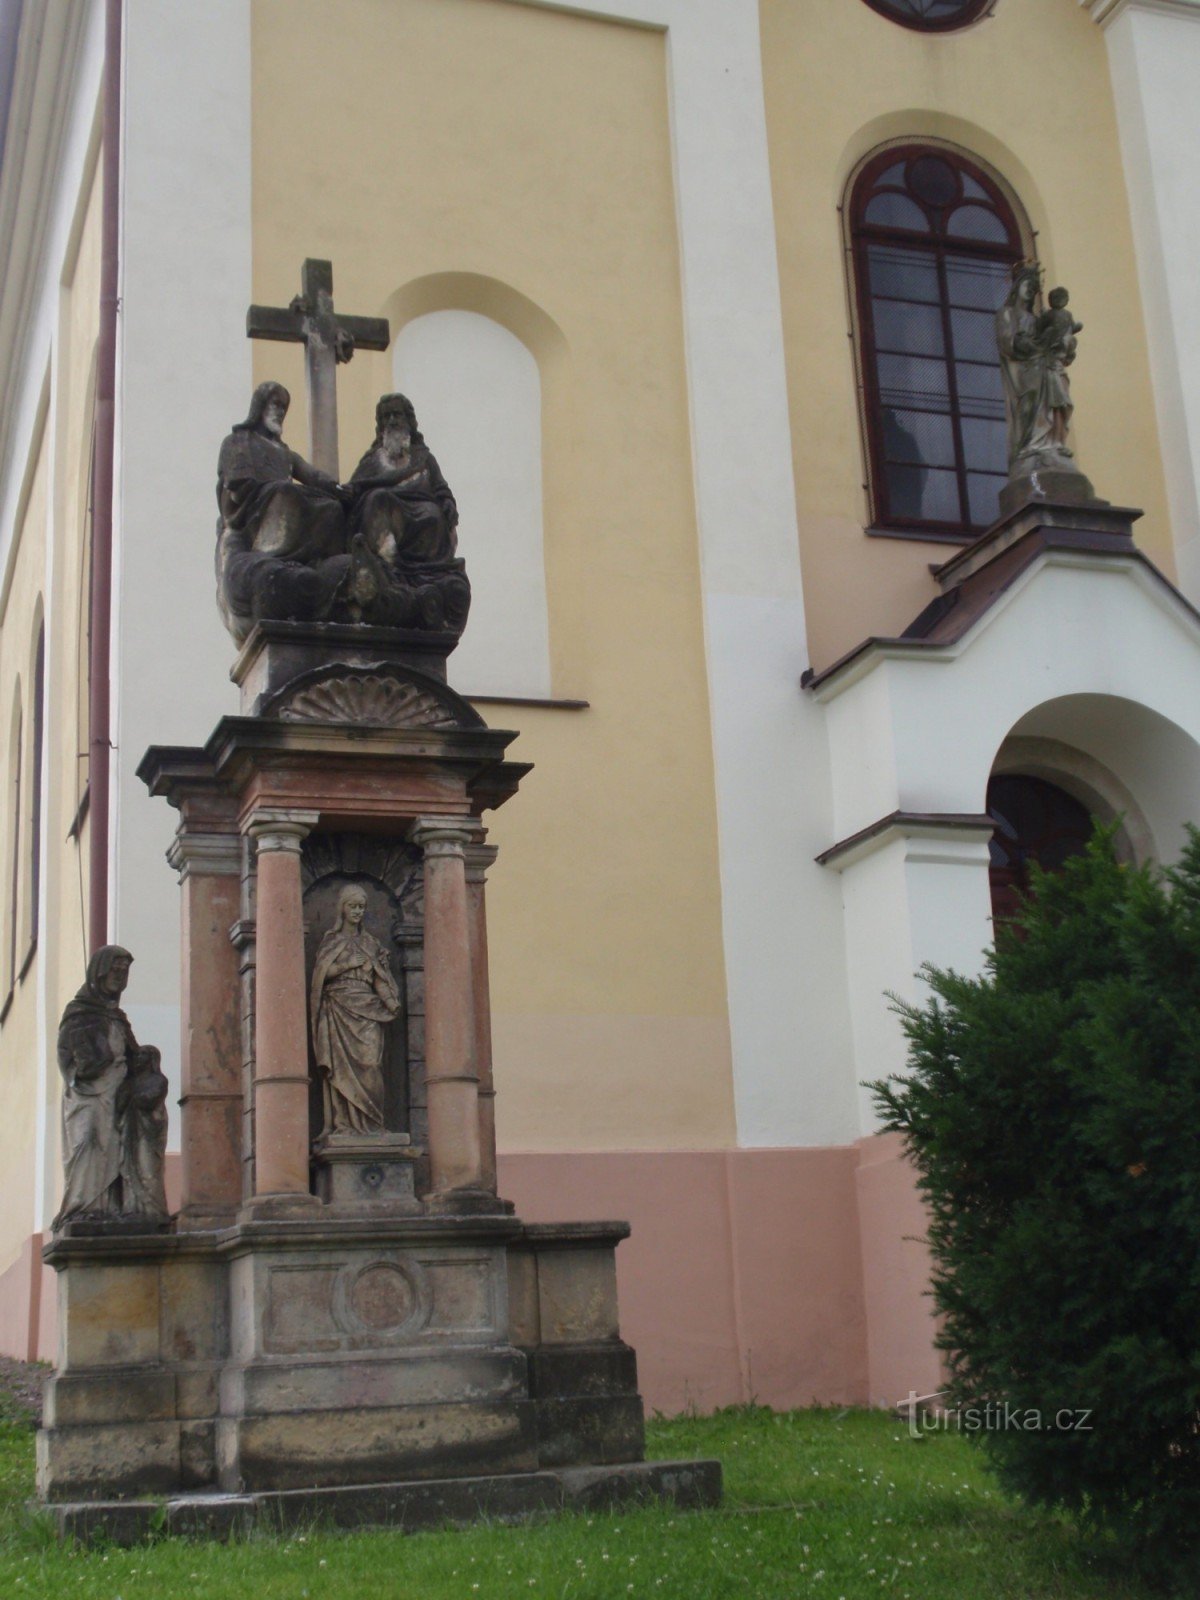 Spomeniki vasi Rybník pri Česká Třebová